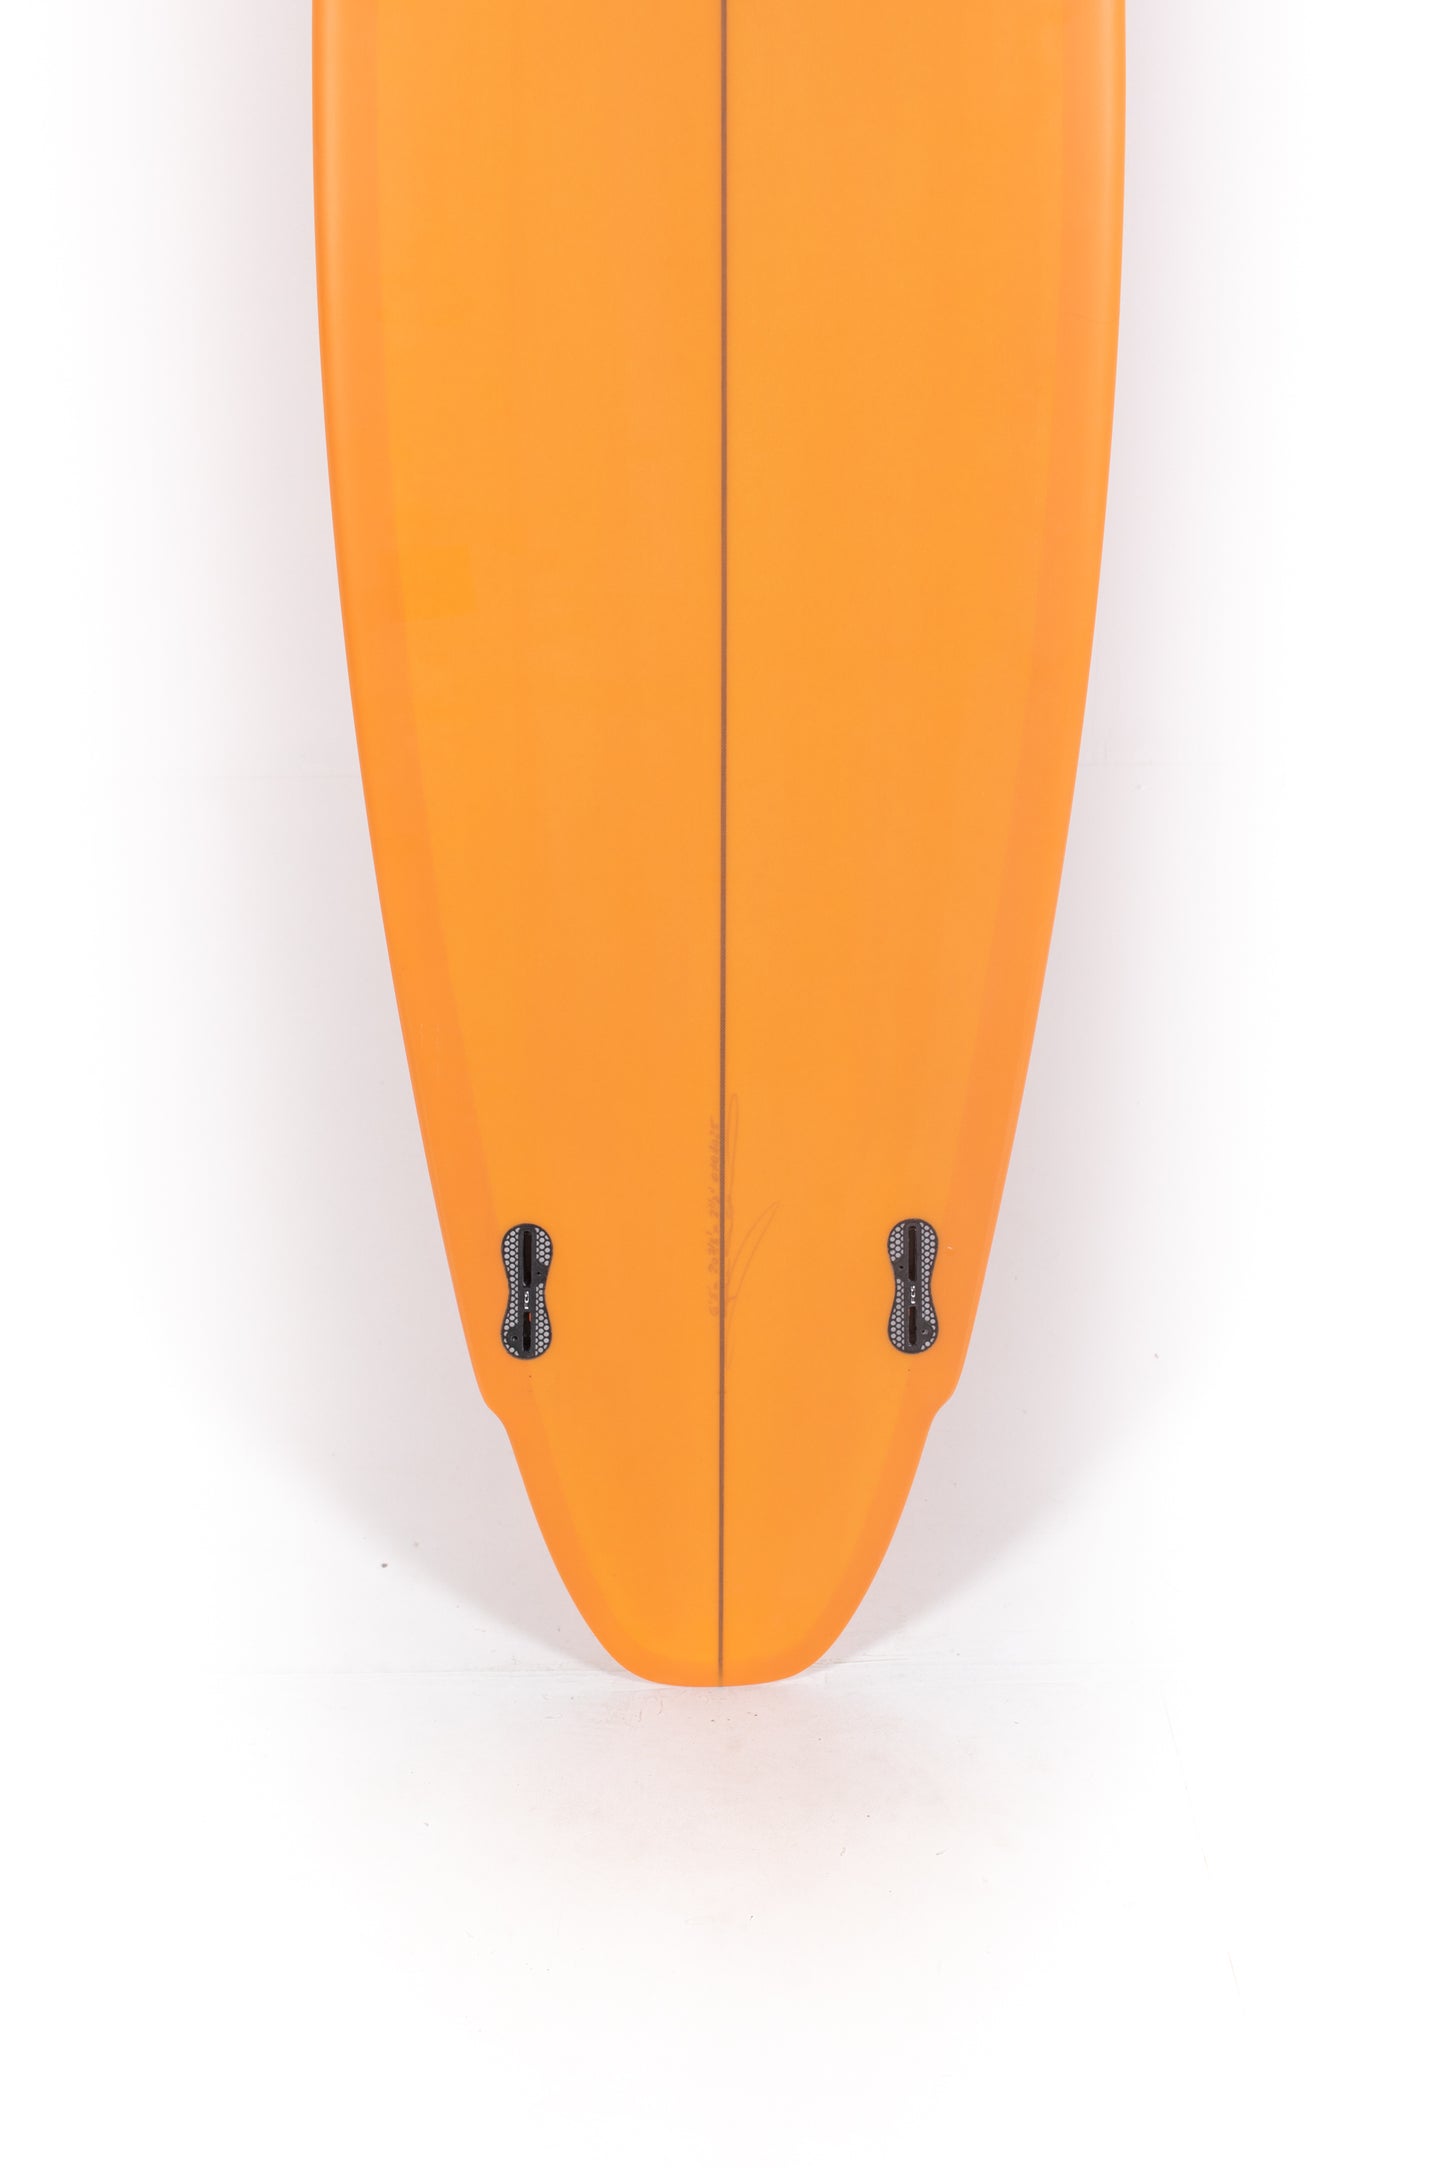 
                  
                    Pukas Sur Shop - Christenson Surfboards - LANE SPLITTER MID- 6'8" x 20 7/8 x 2 1/2 - CX04025
                  
                